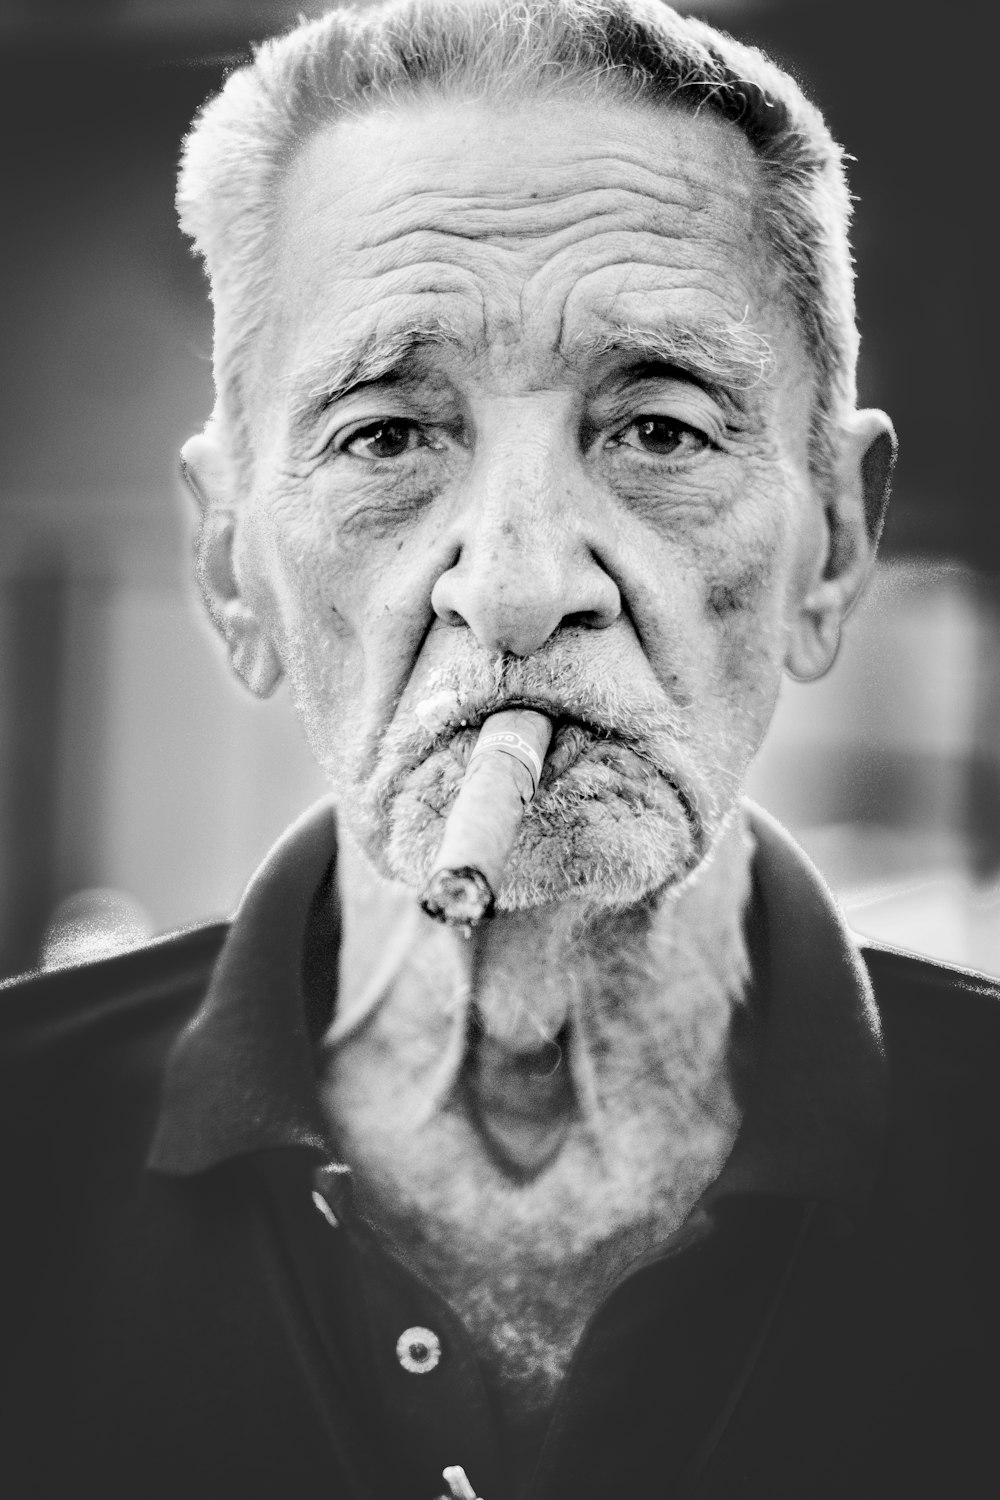 fotografia in scala di grigi dell'uomo che fuma il sigaro